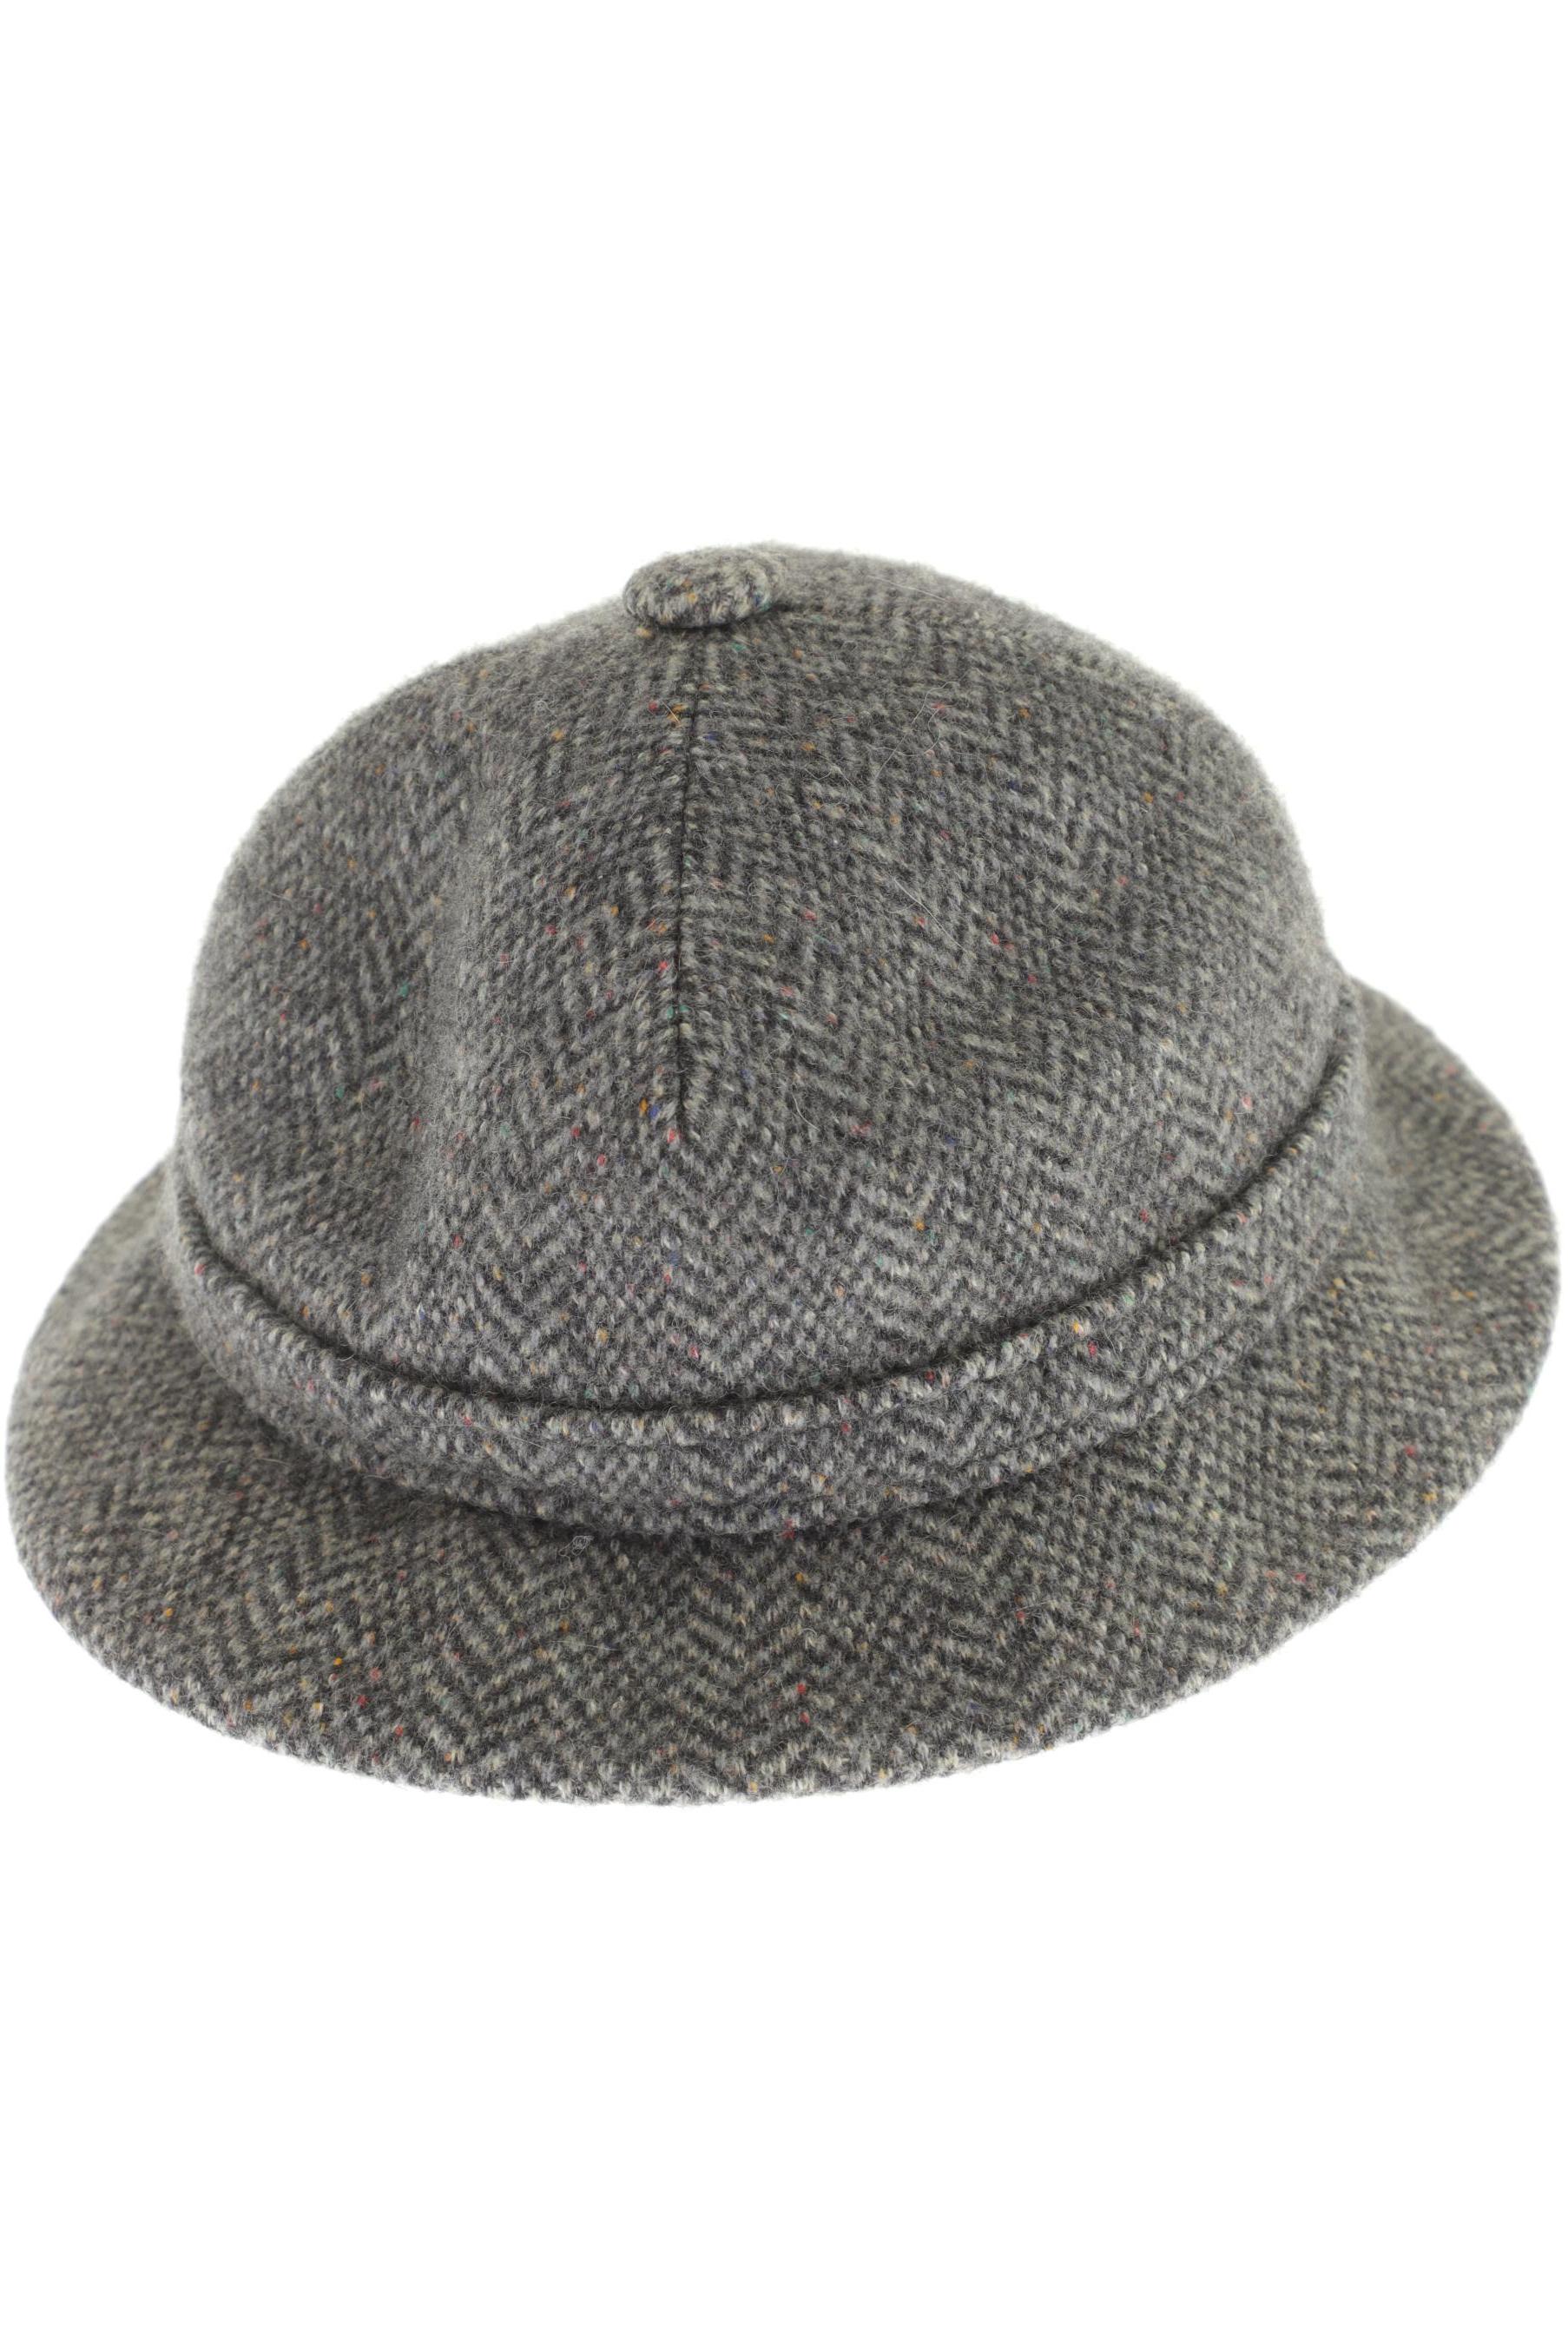 Kangol Damen Hut/Mütze, grau von Kangol